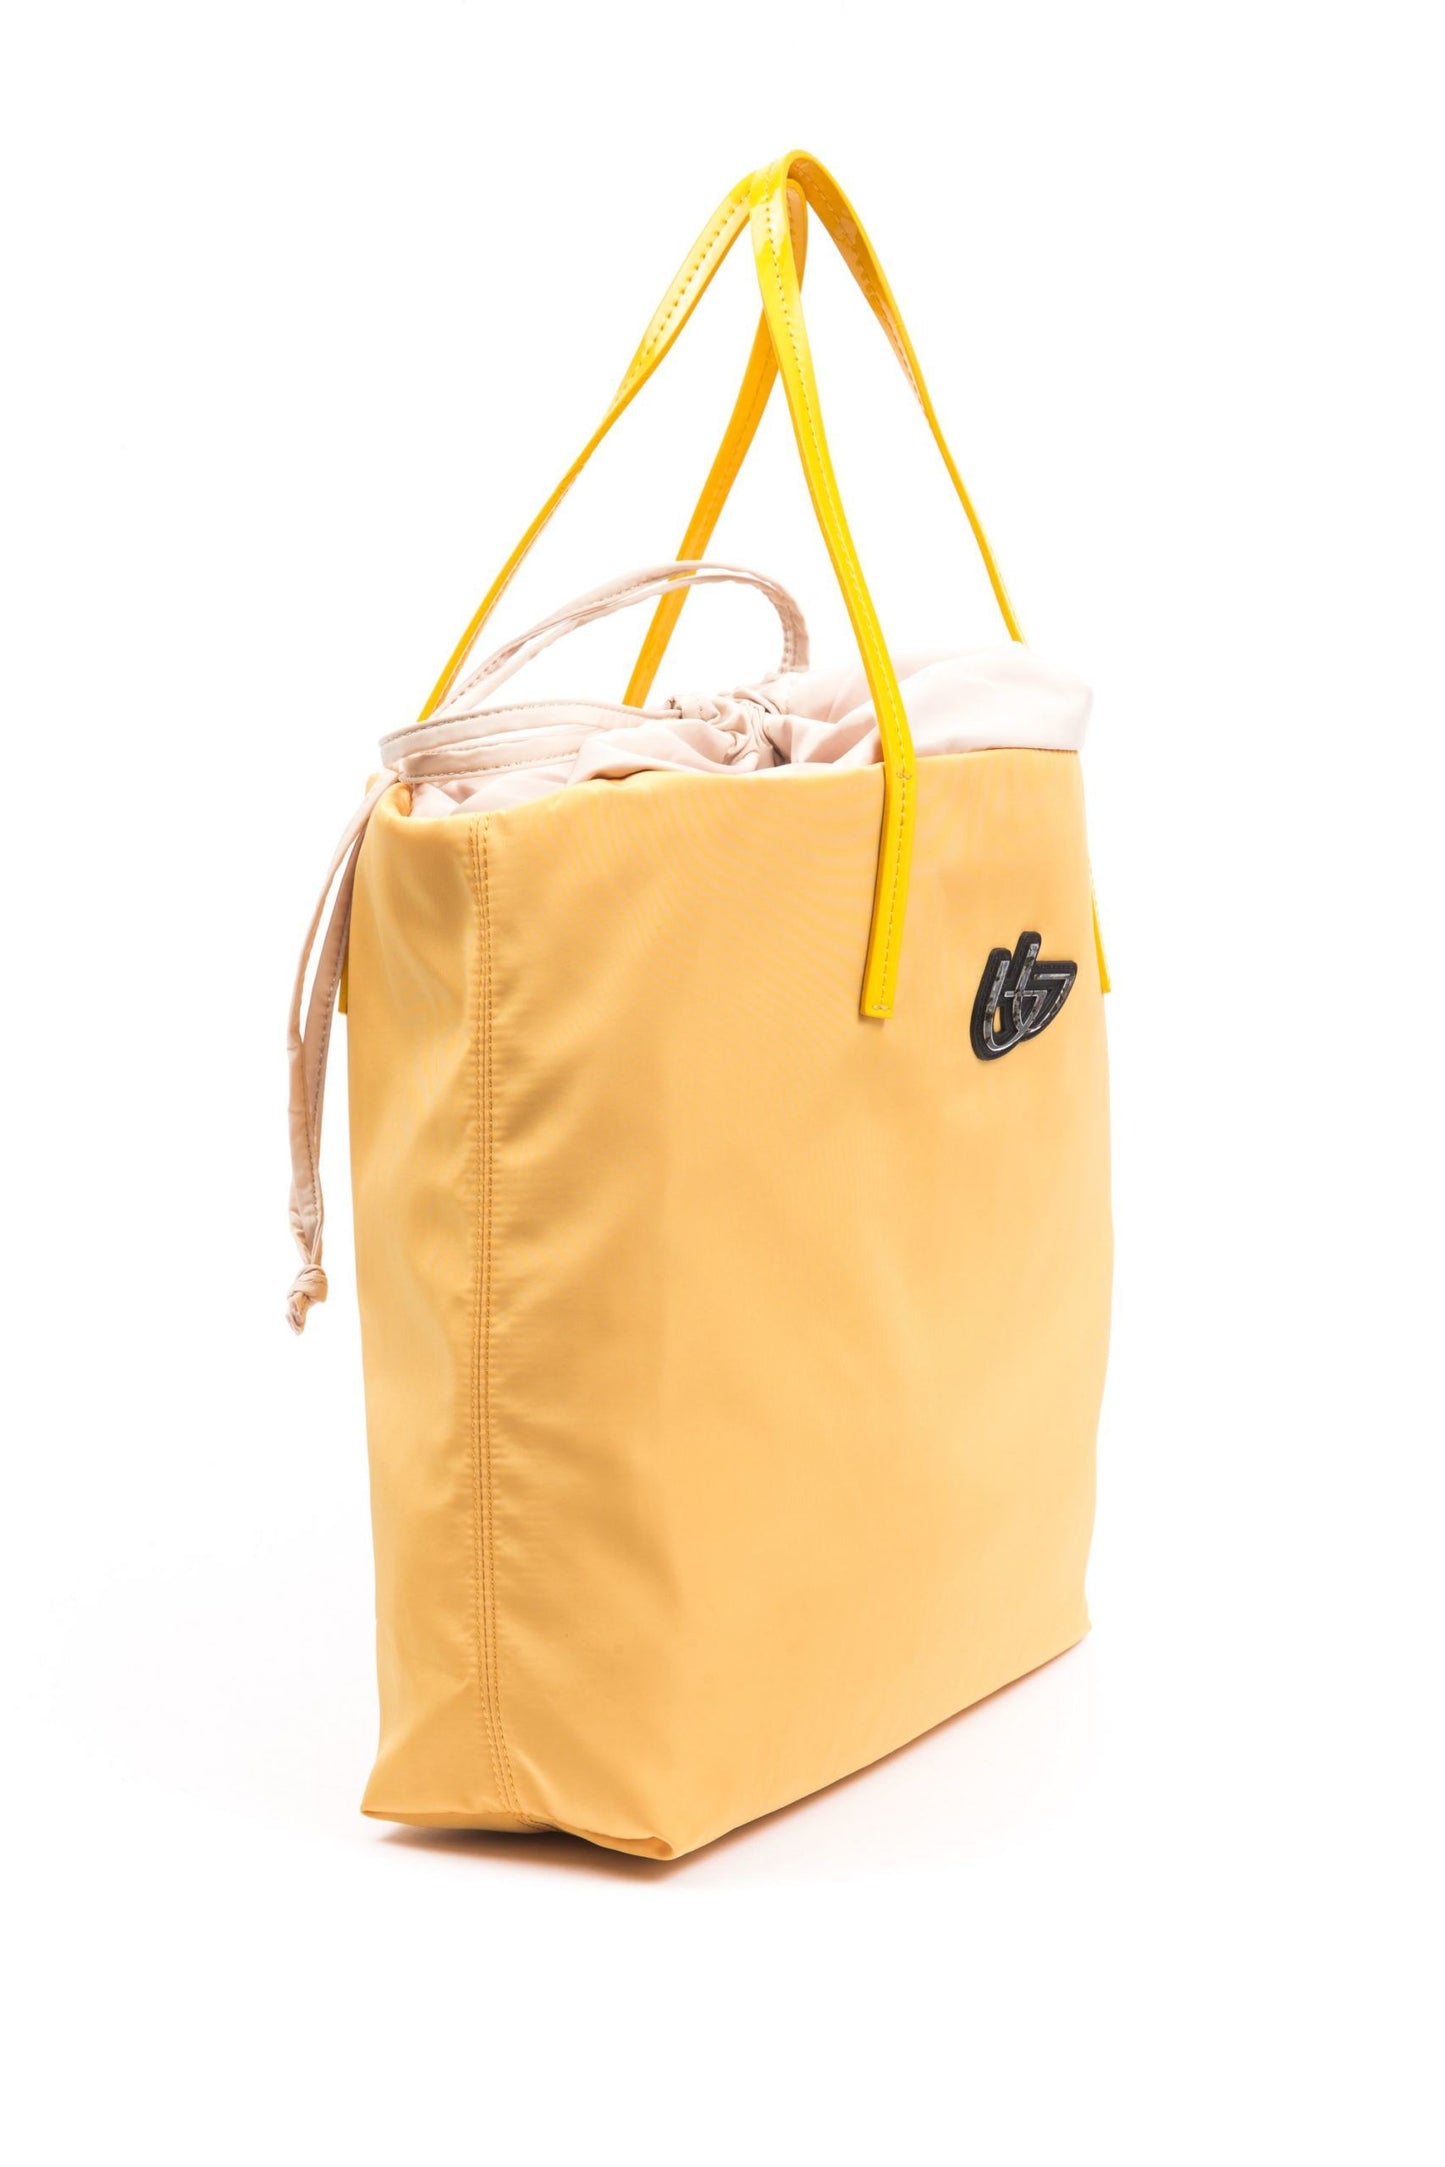 Chic Sunshine Yellow Fabric Tote Bag